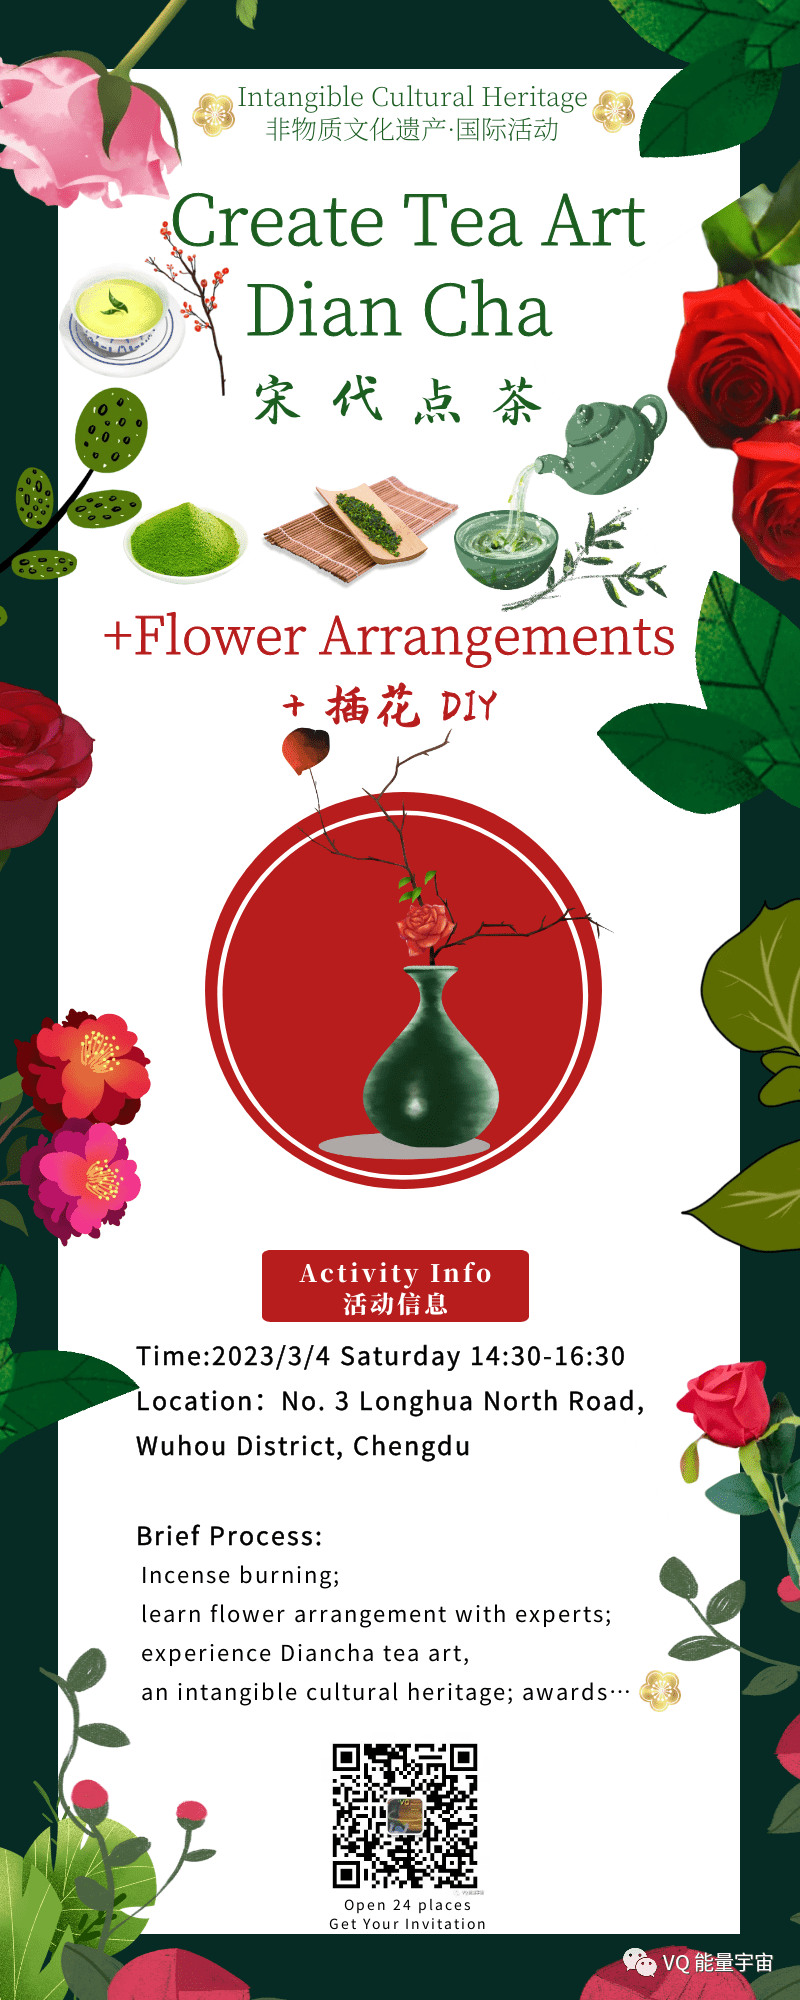 3.3 Flower Arrangement DIY Bouquet Create Tea Art 